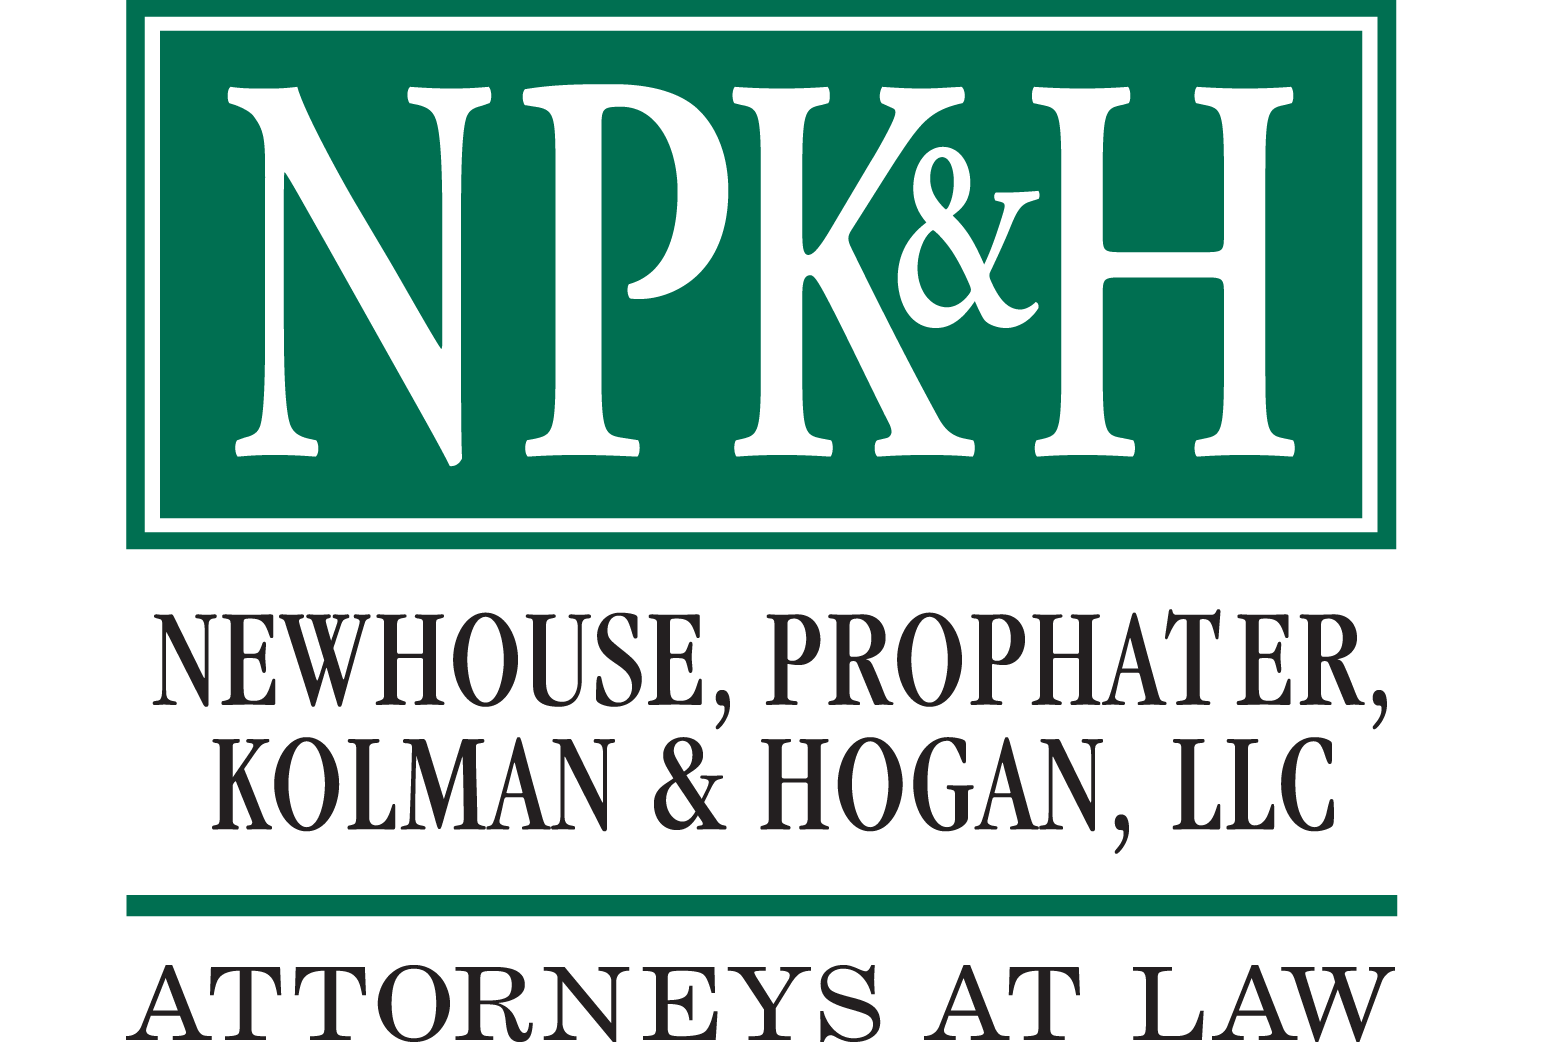 Newhouse, Prophater, Kolman & Hogan, LLC